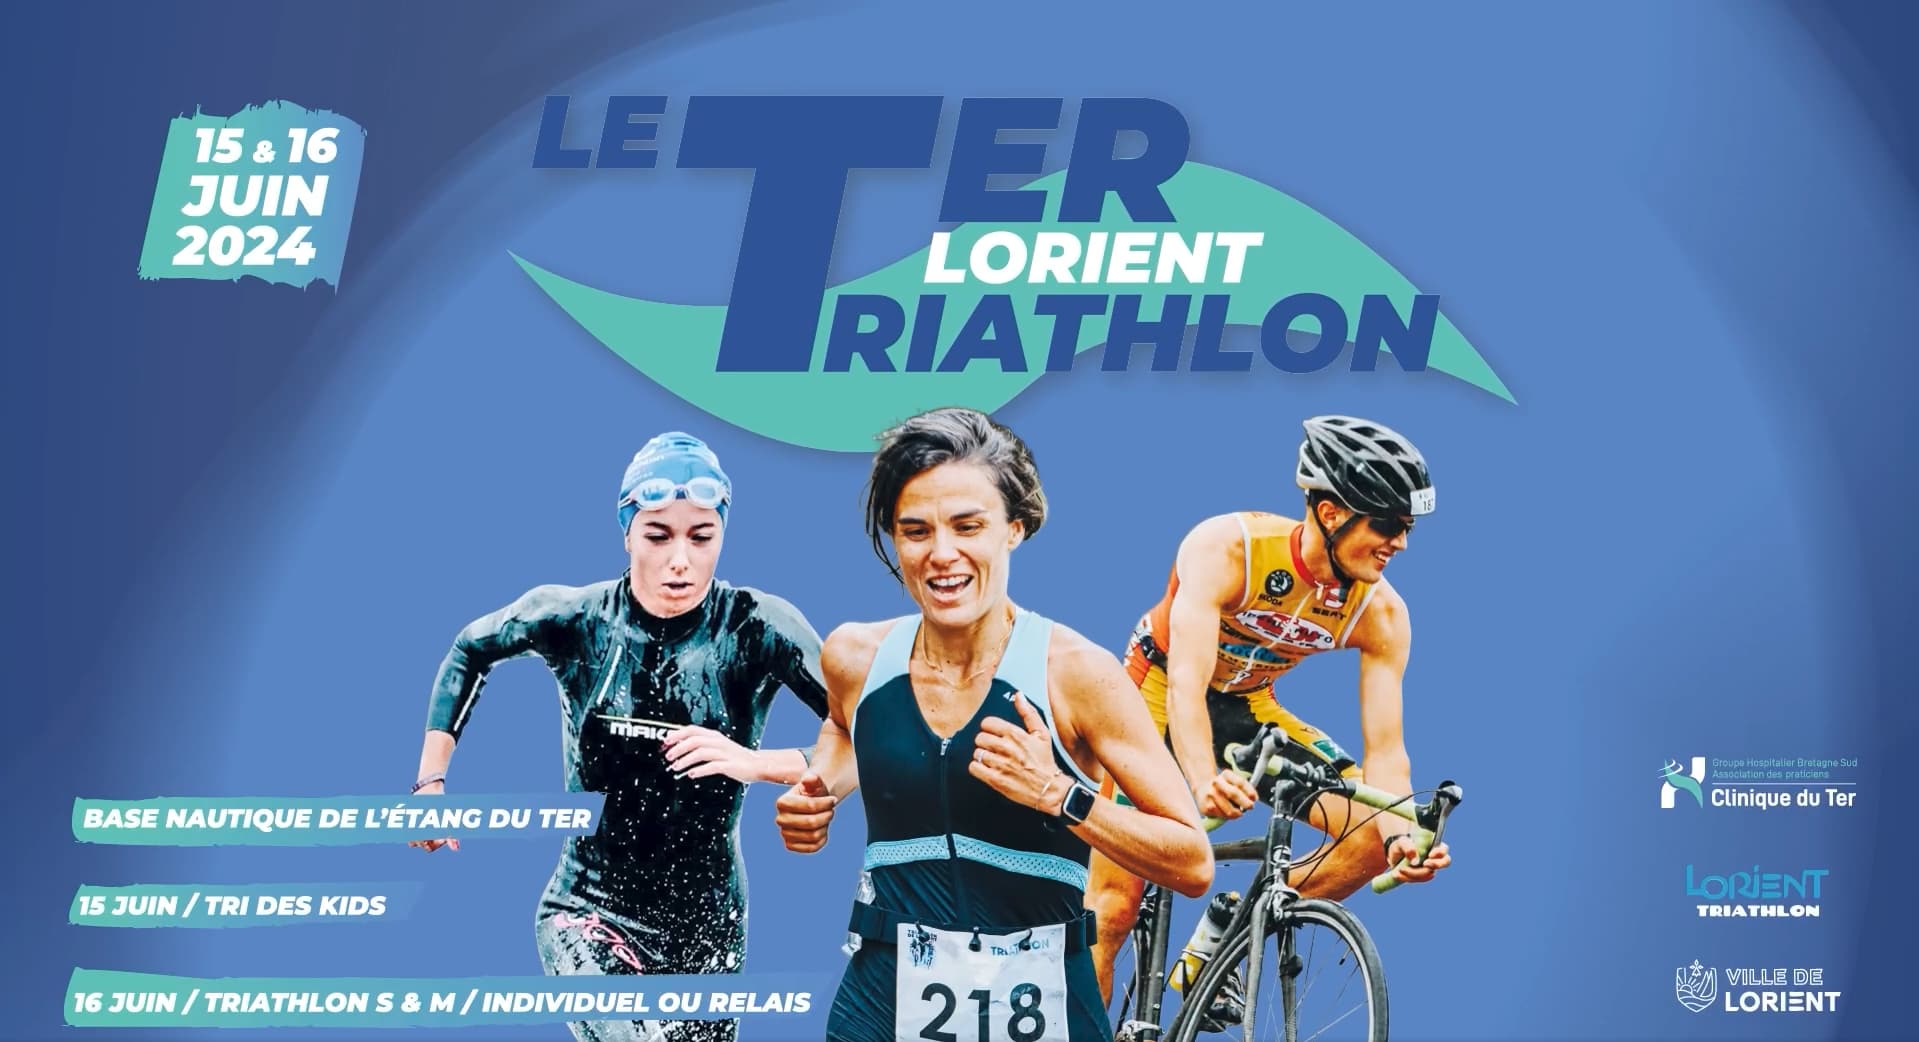 J-15 - Le Ter Lorient Triathlon !